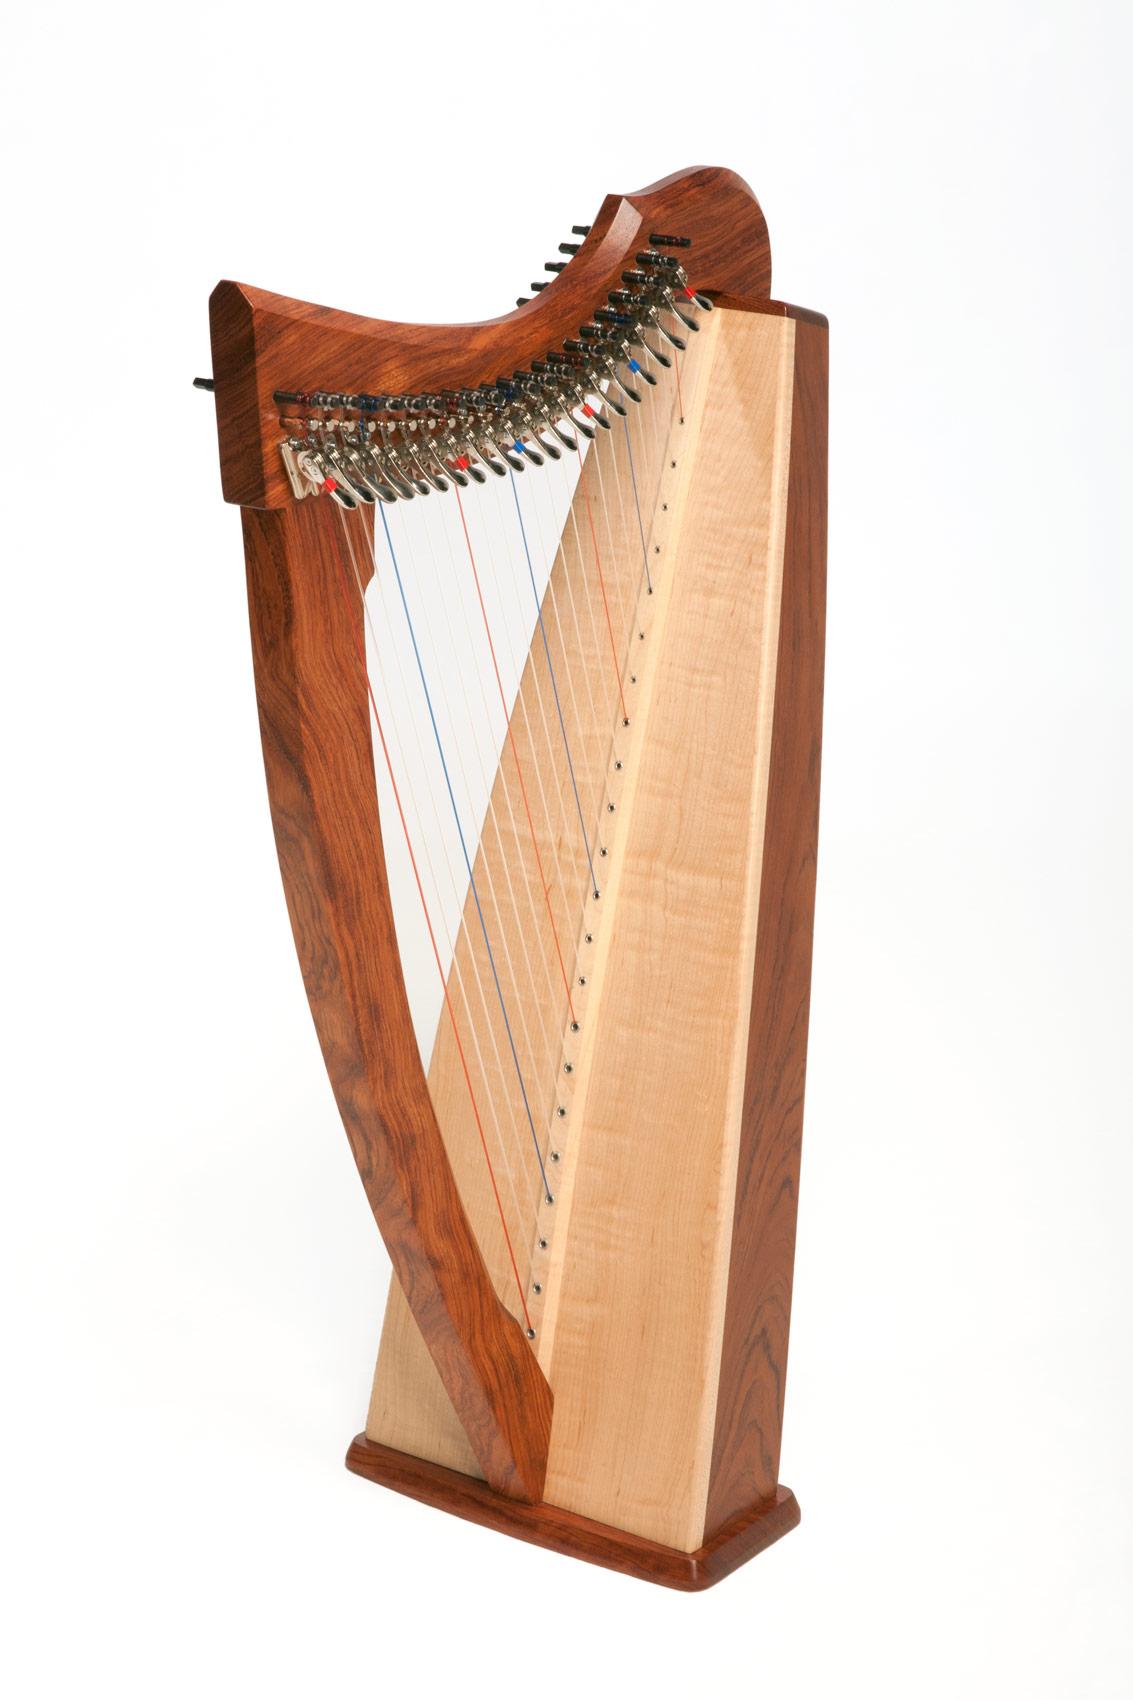 Triplett Zephyr String Travel Harp